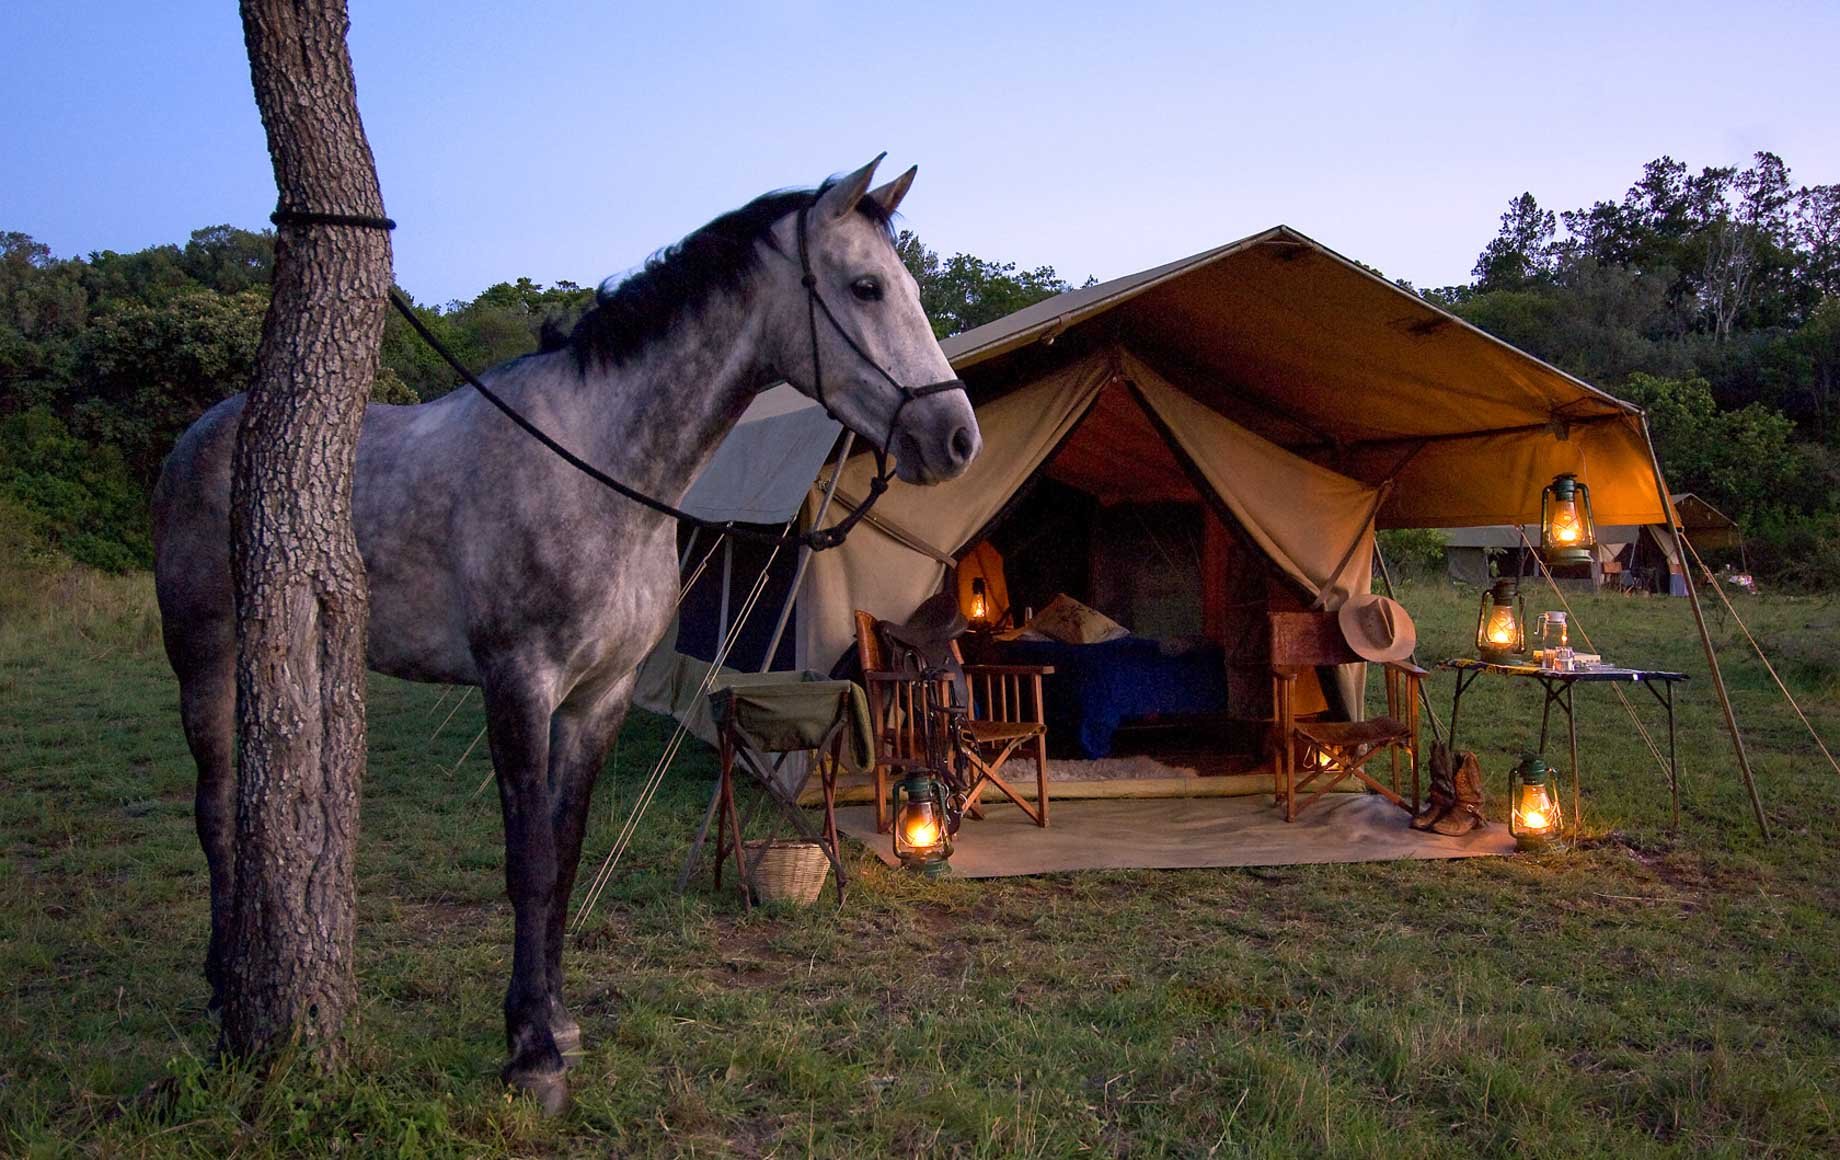 Riding camp. Лошадь возле дома. Домик для лошадки. Лошадь в палатке. Домик в лесу с лошадьми.